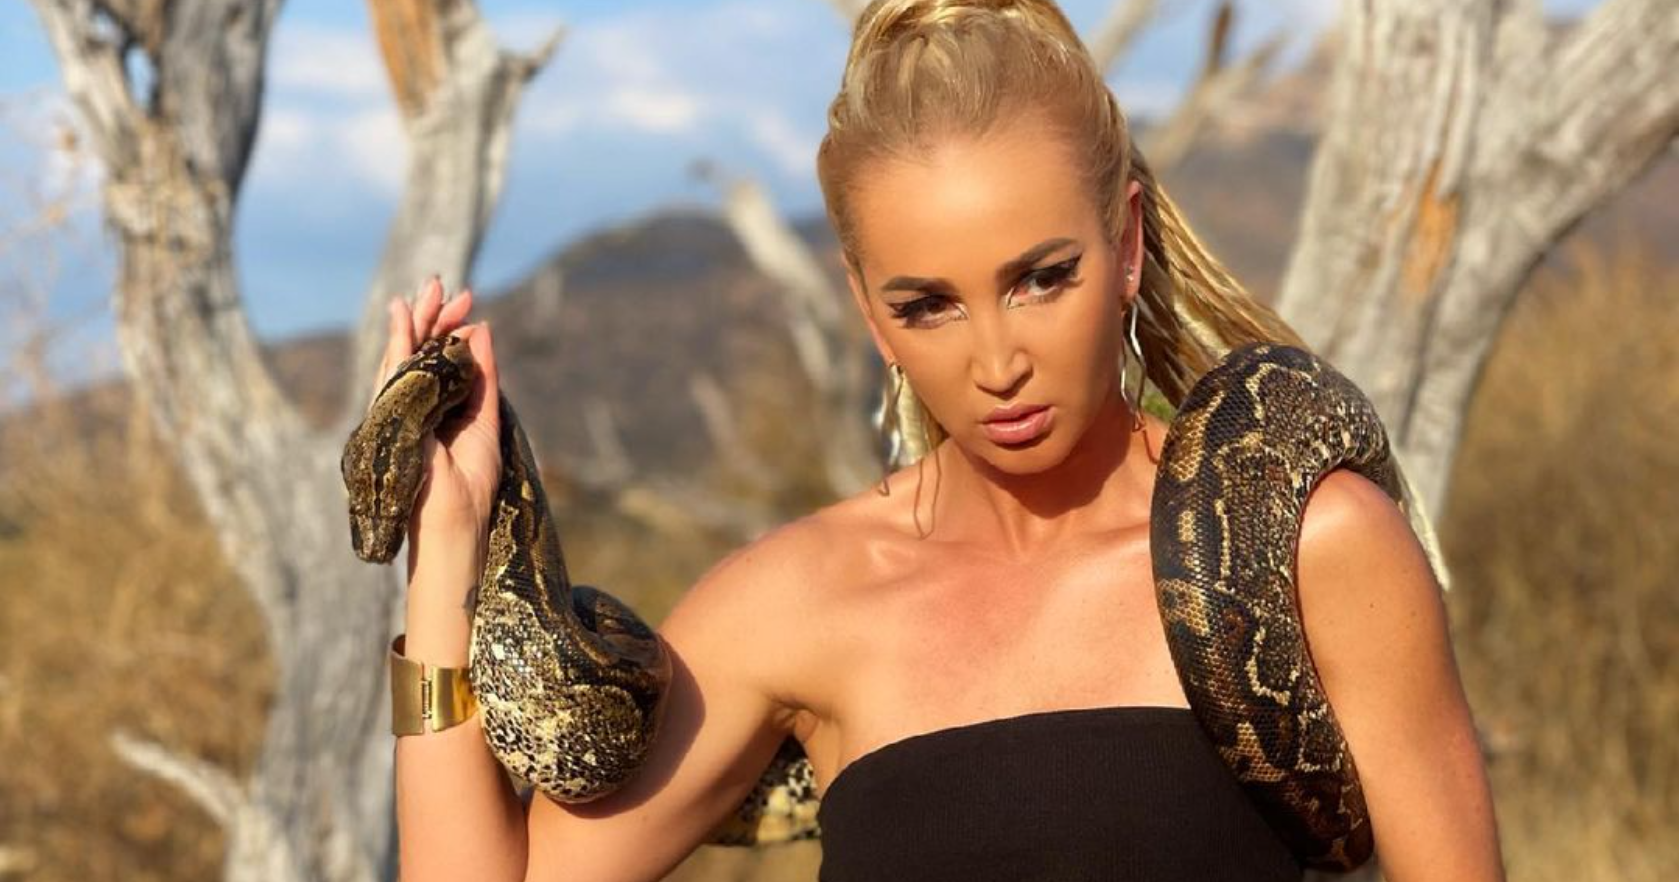 Мотивируя фанатов, Ольга Бузова преодолела свою главную фобию - змей